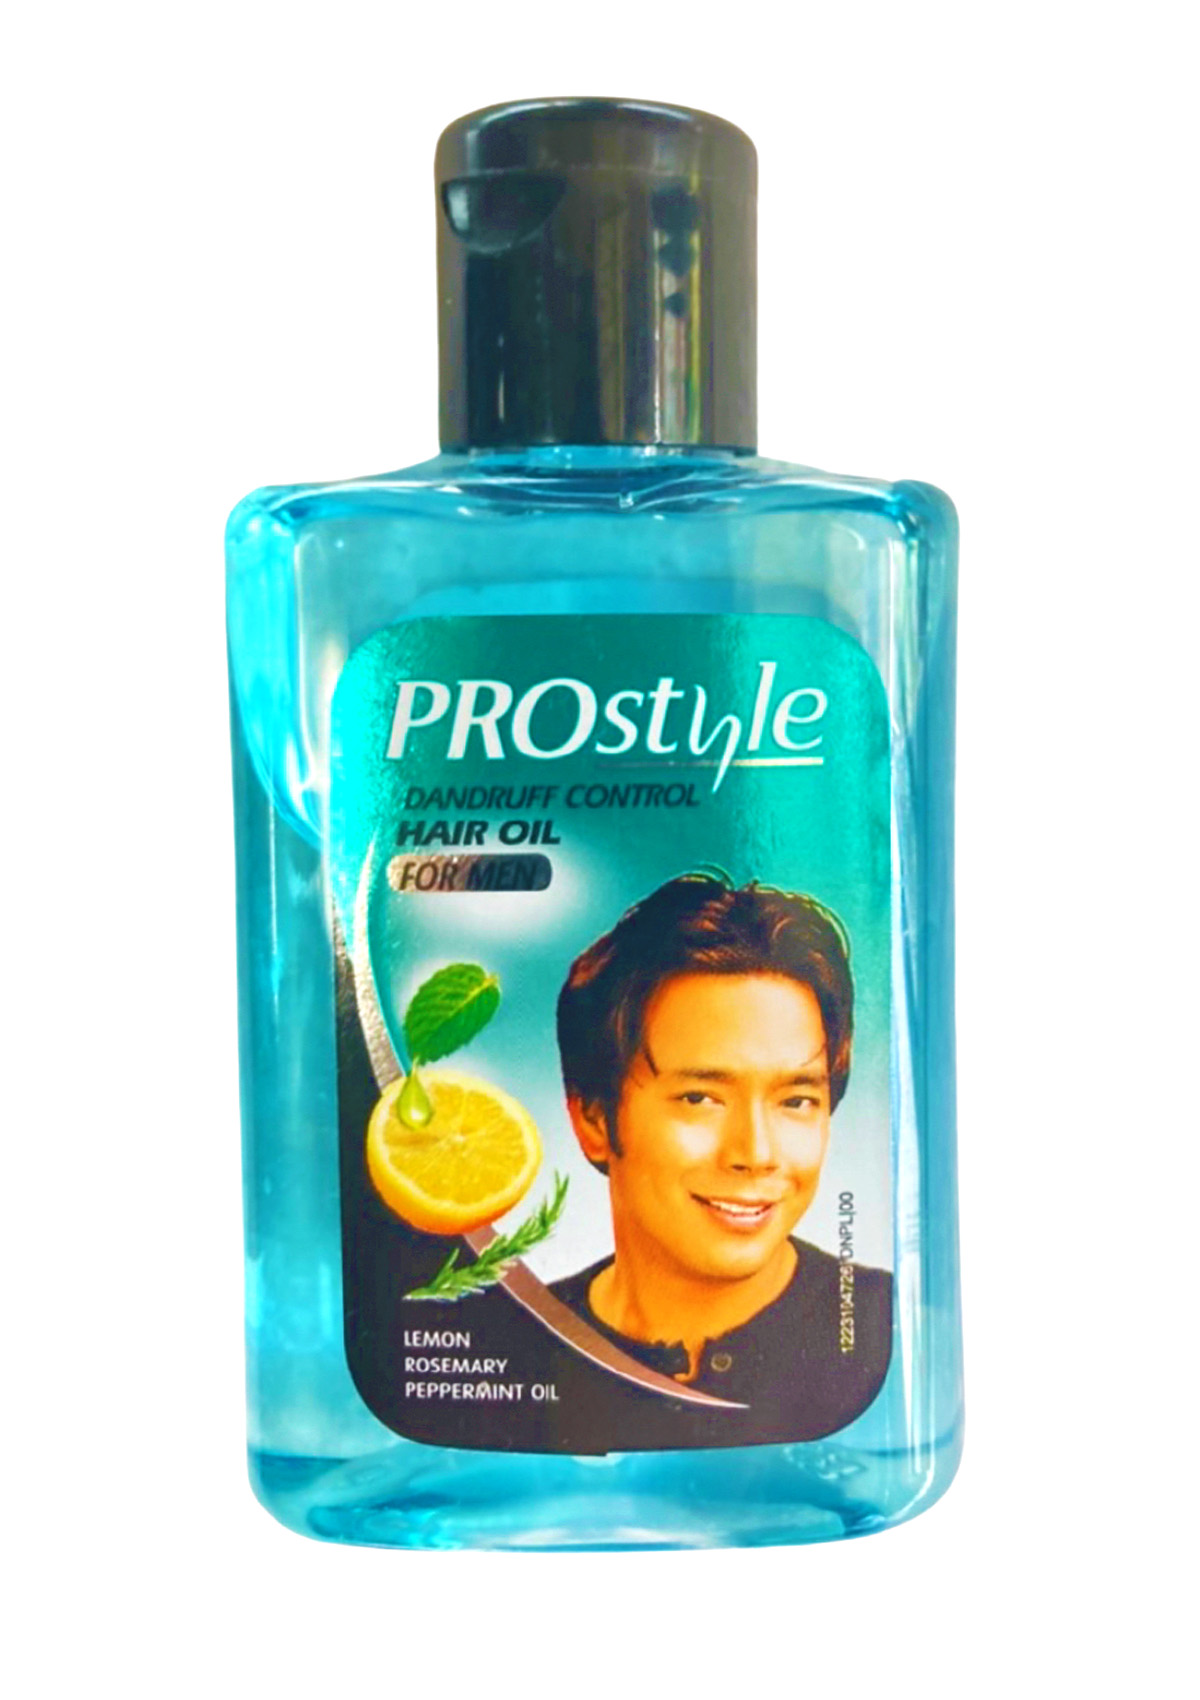 Prostyle Dandruff Control Hair Oil for Men 150 ml